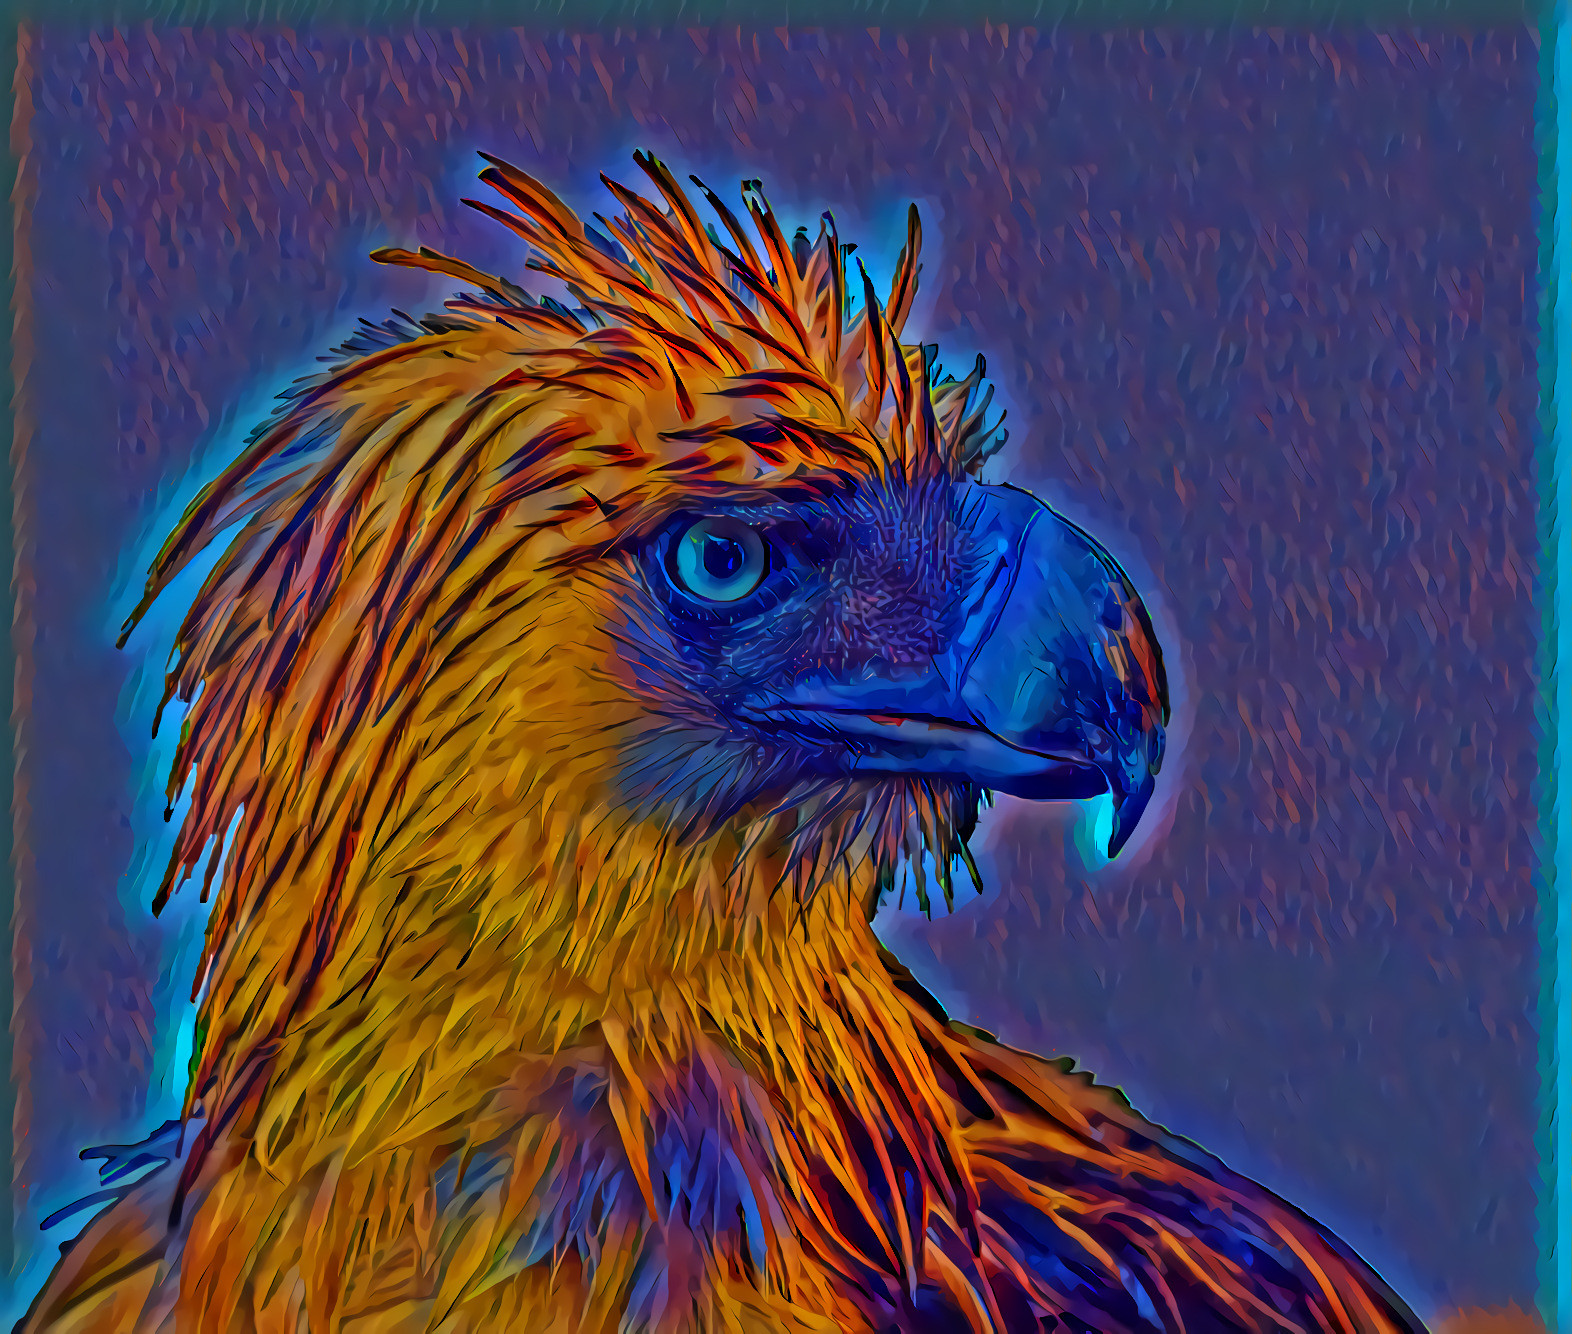 Blue-beaked eagle